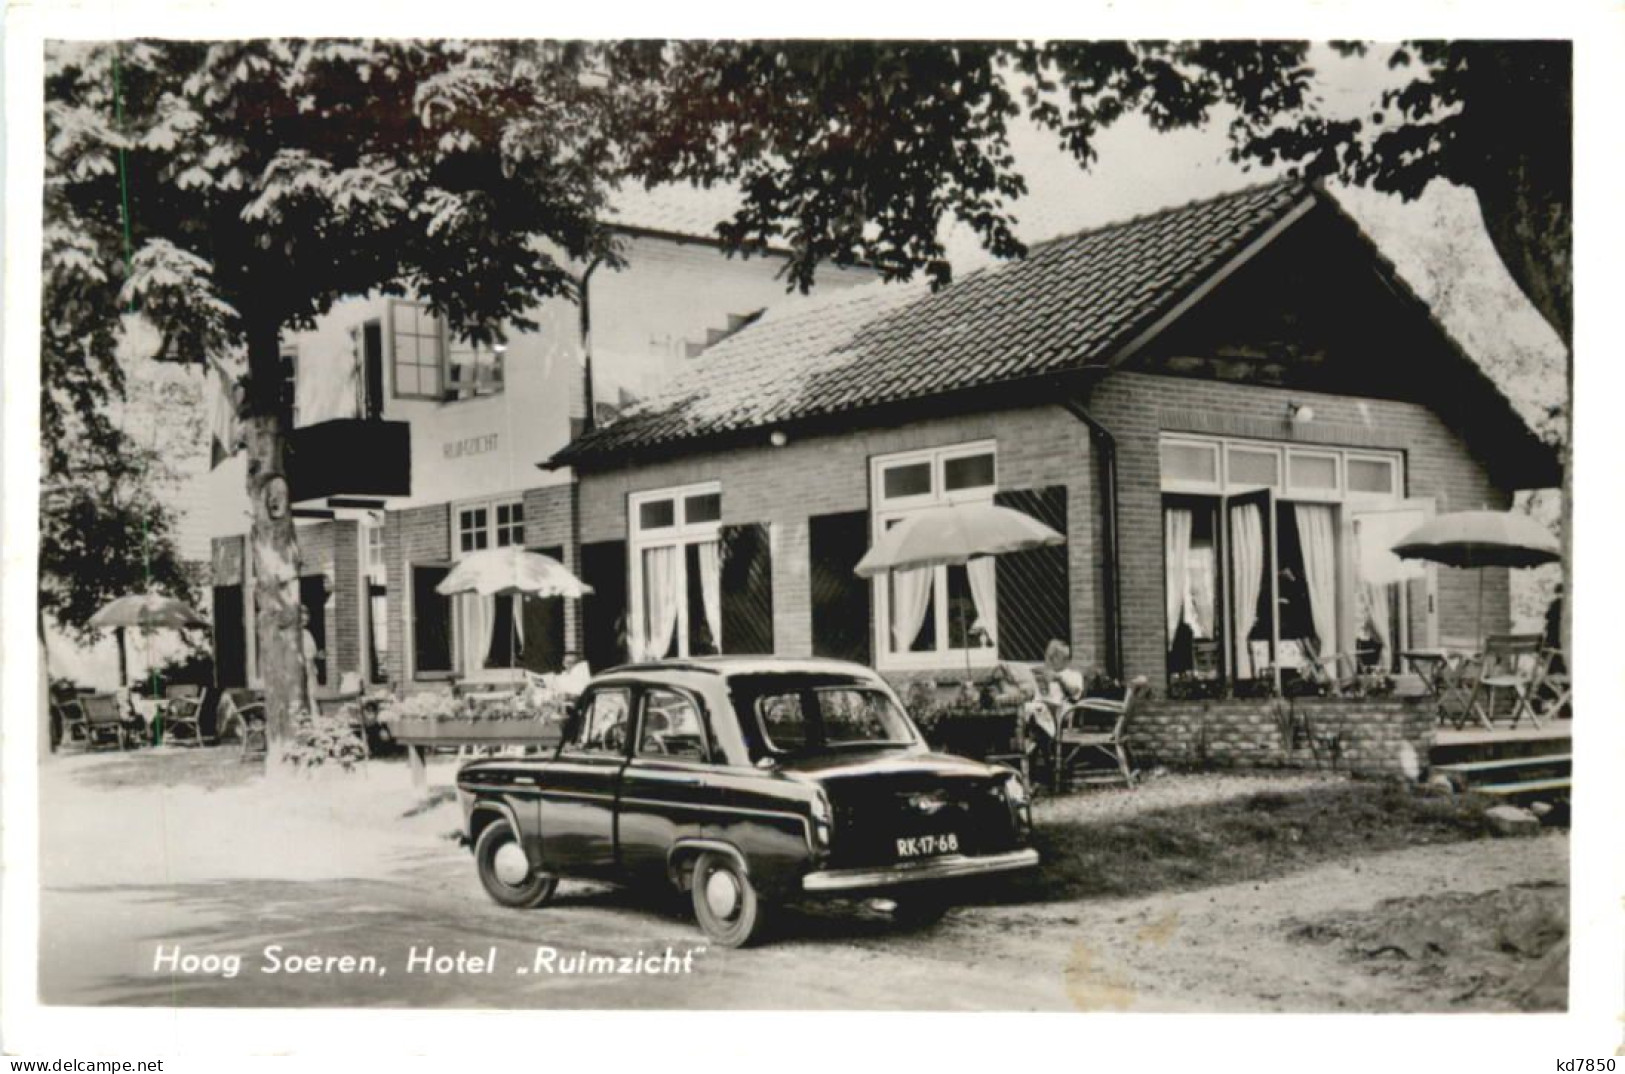 Hoog Soeren - Hotel Ruimzicht - Apeldoorn